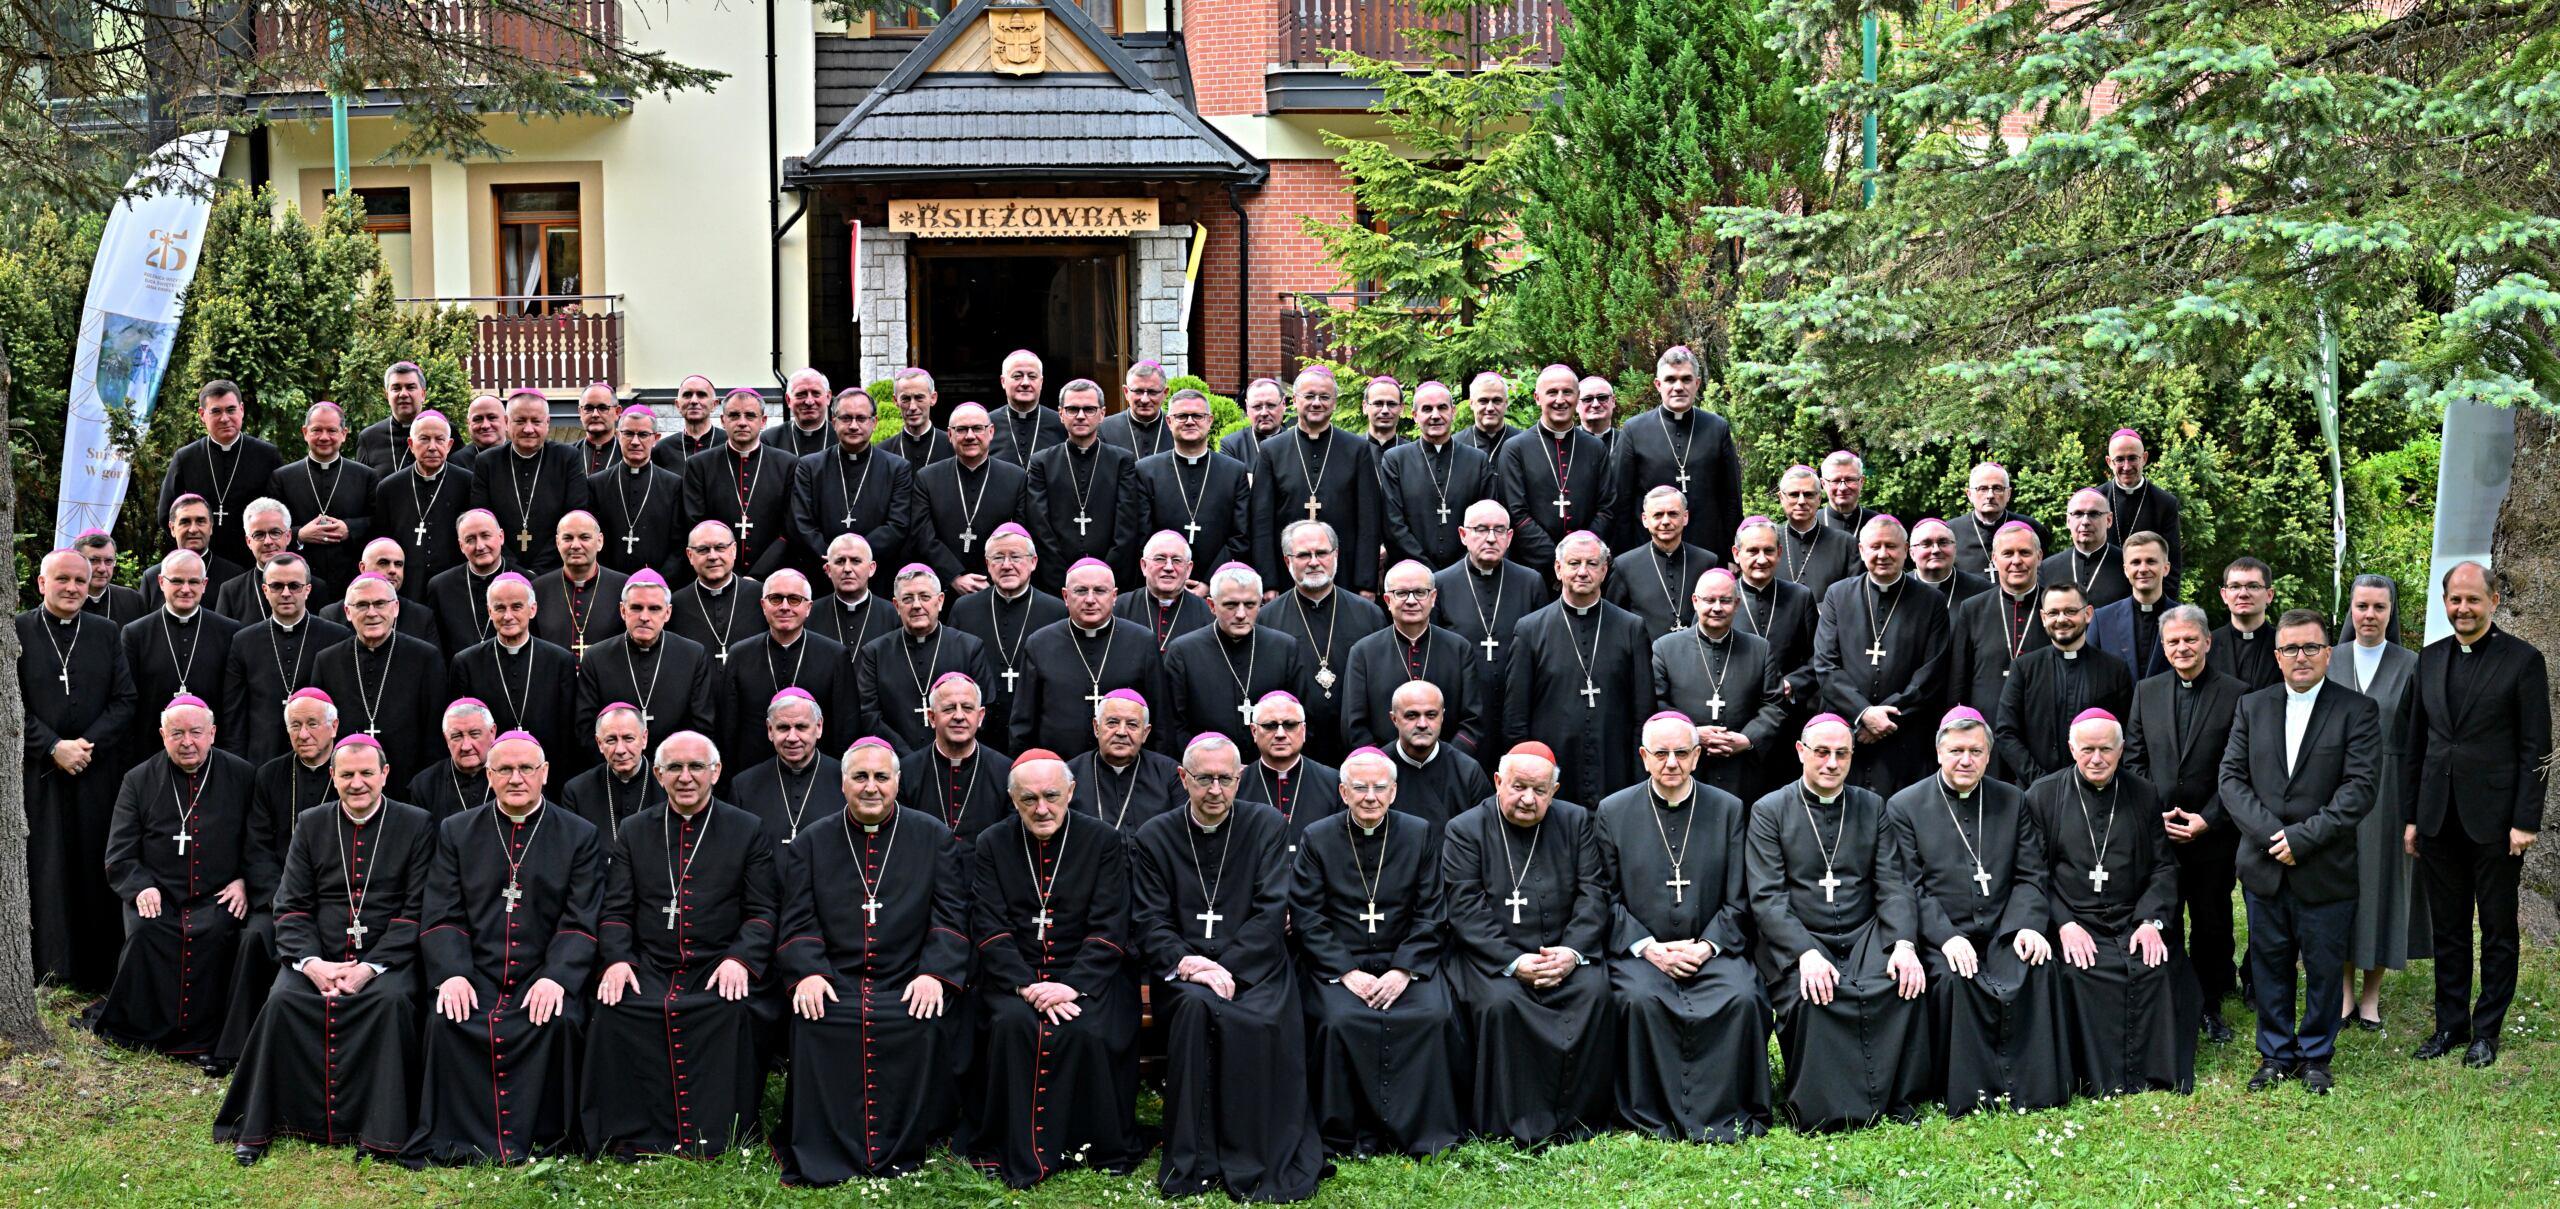 wspólne zdjęcie polskich biskupów przypominające zdjęcia klasowe